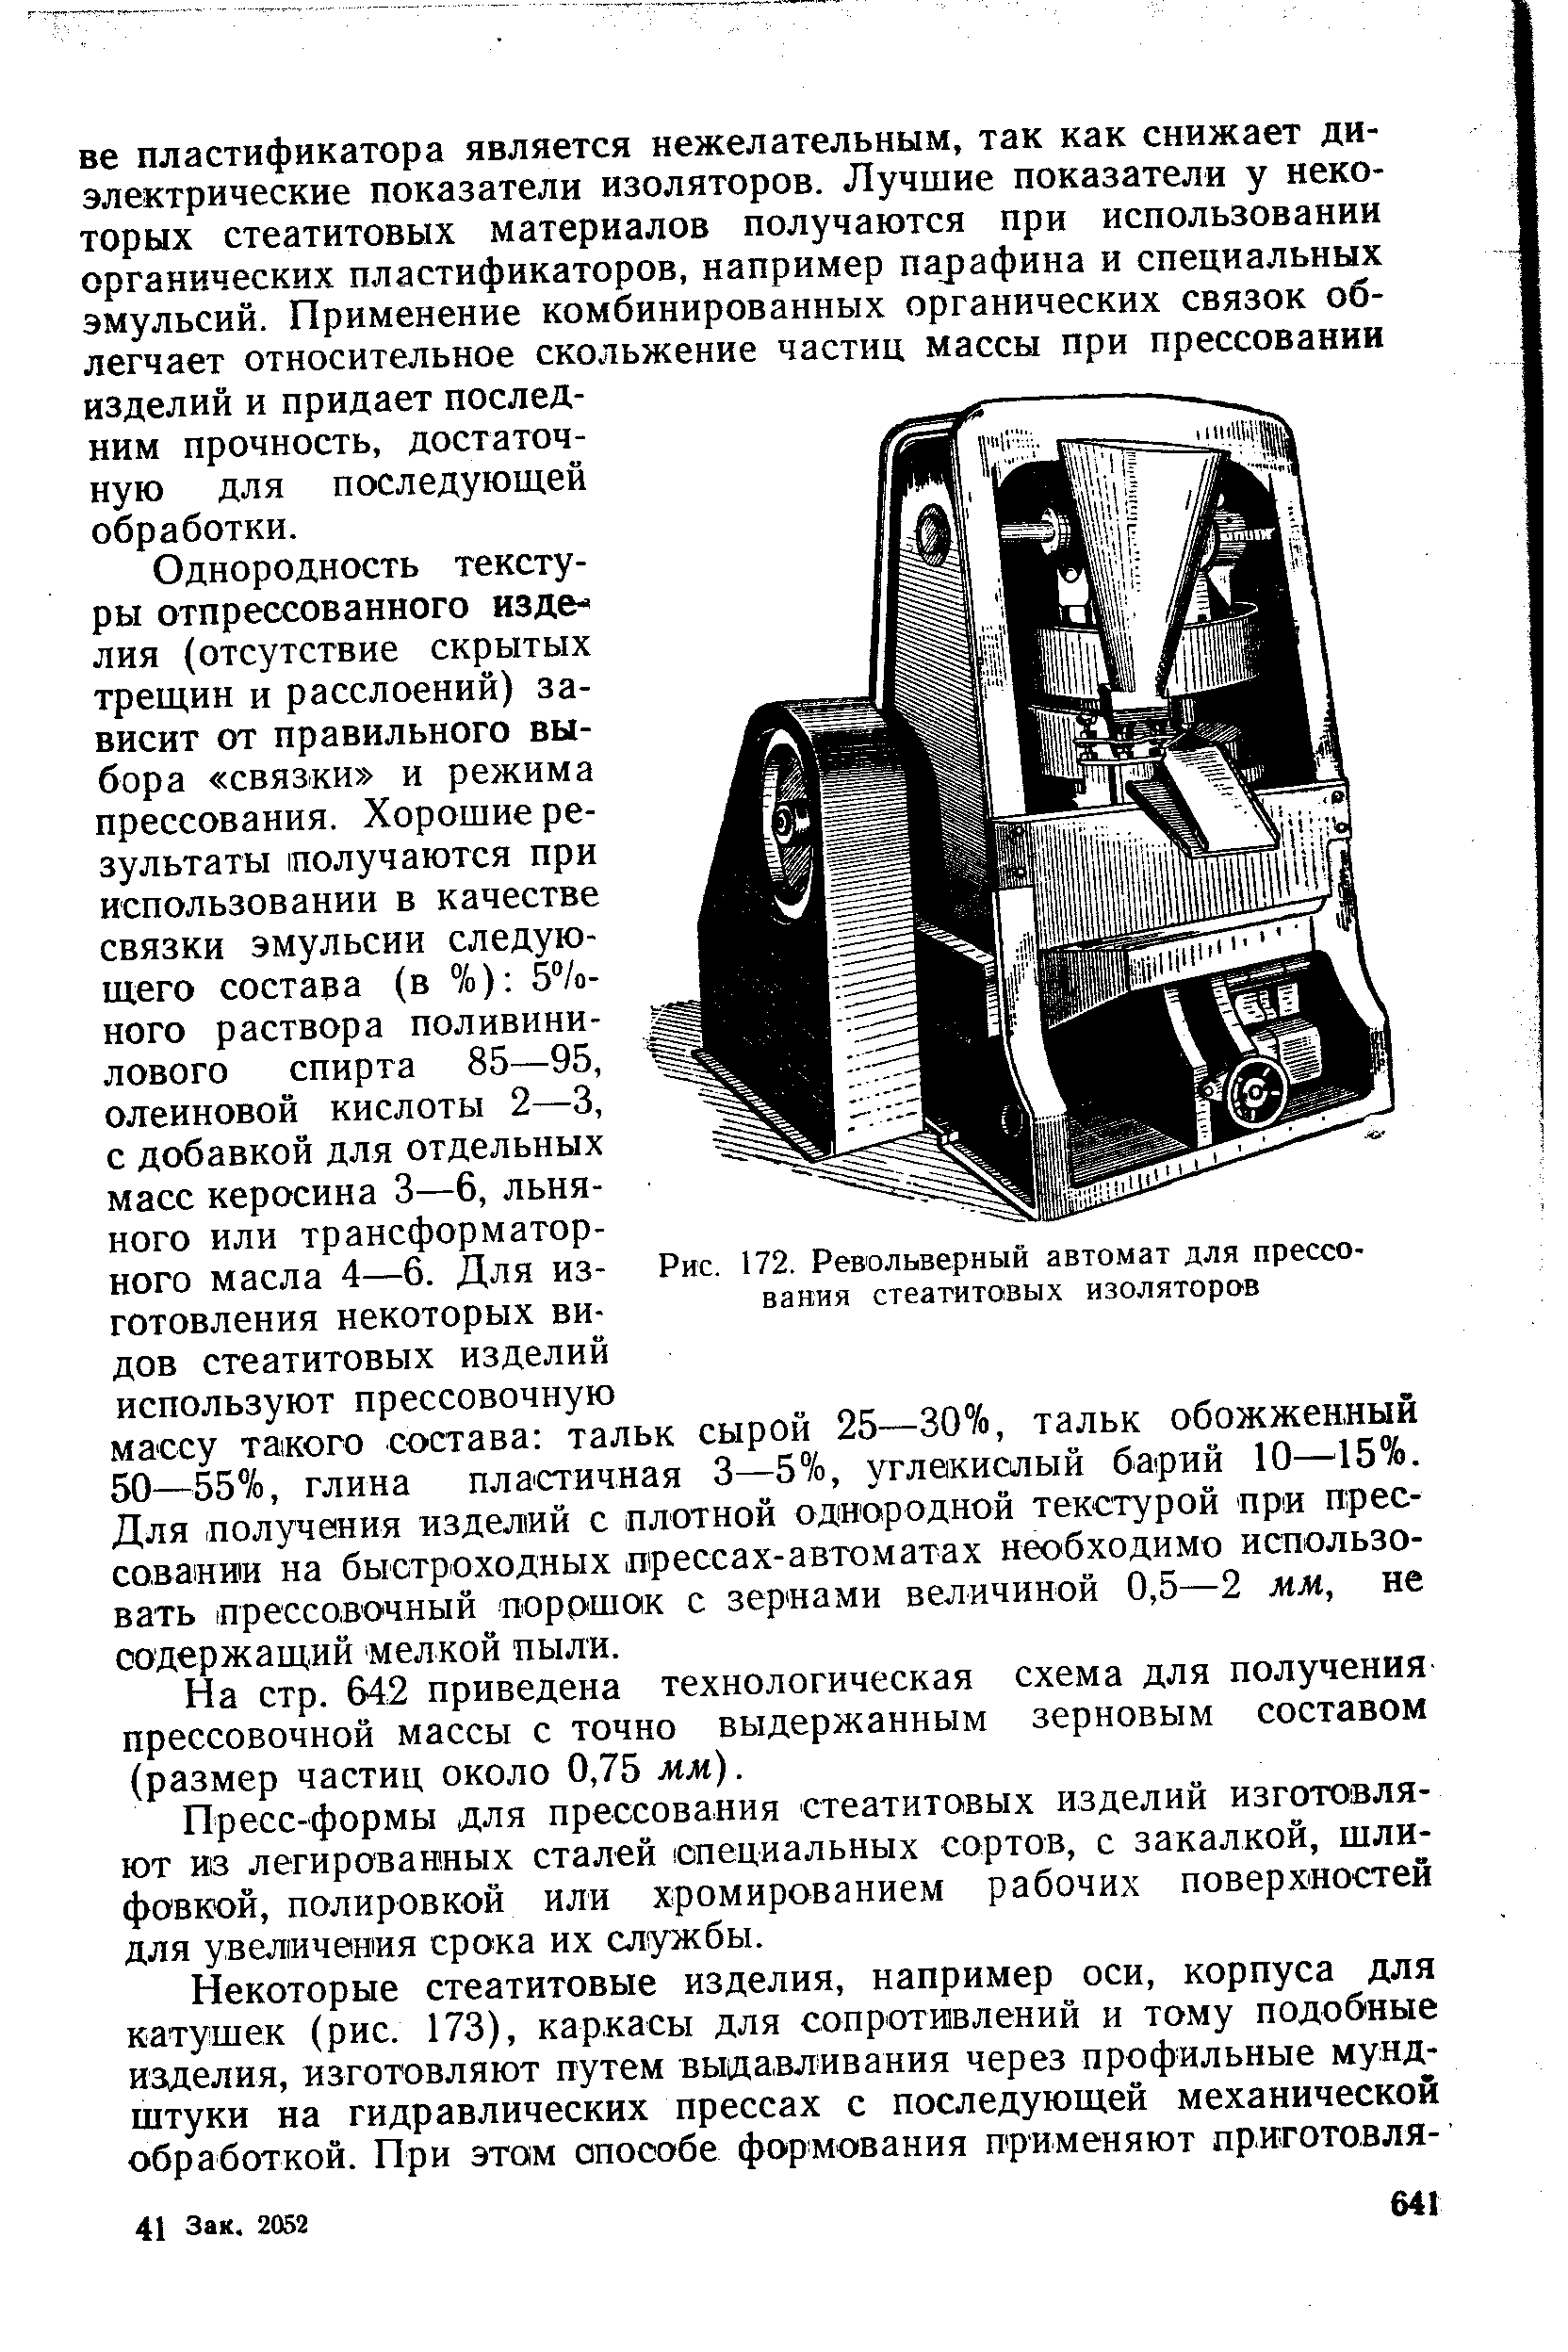 Рис. 172. Револьверный автомат для прессования стеатитовых изоляторов
